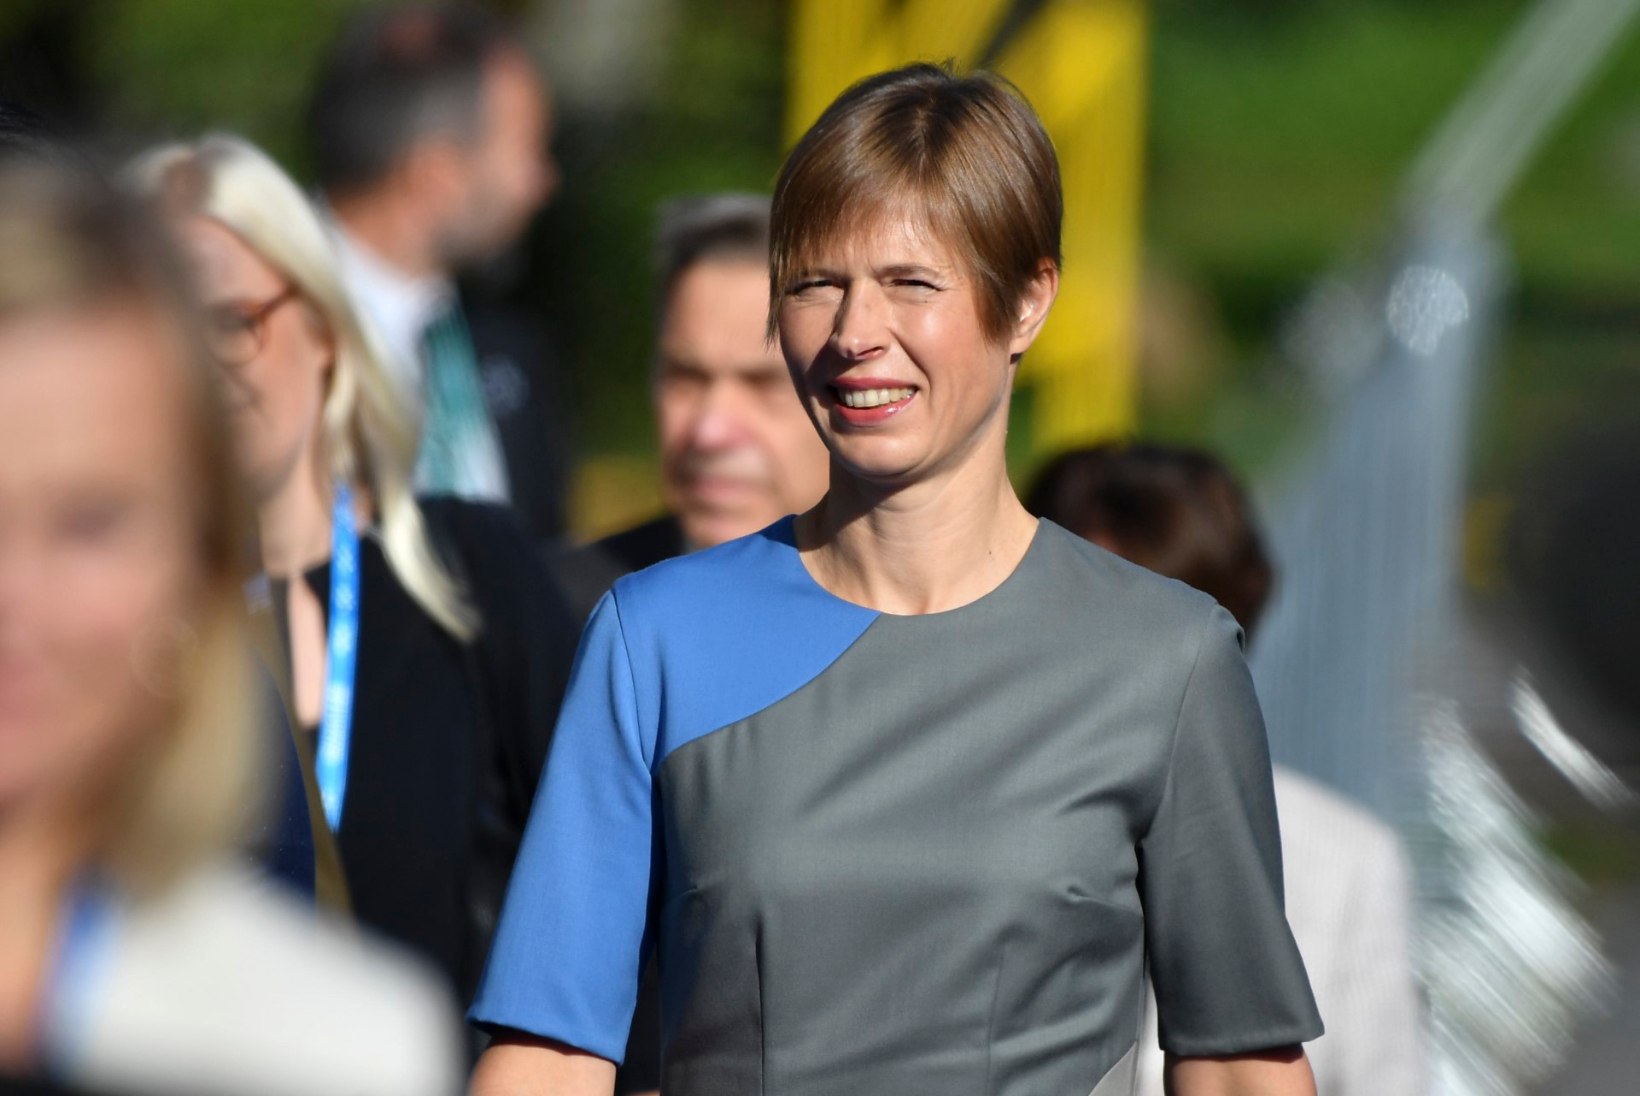 ESIMENE EESTLANE: Kersti Kaljulaid valiti maailma mõjukaimate naiste hulka